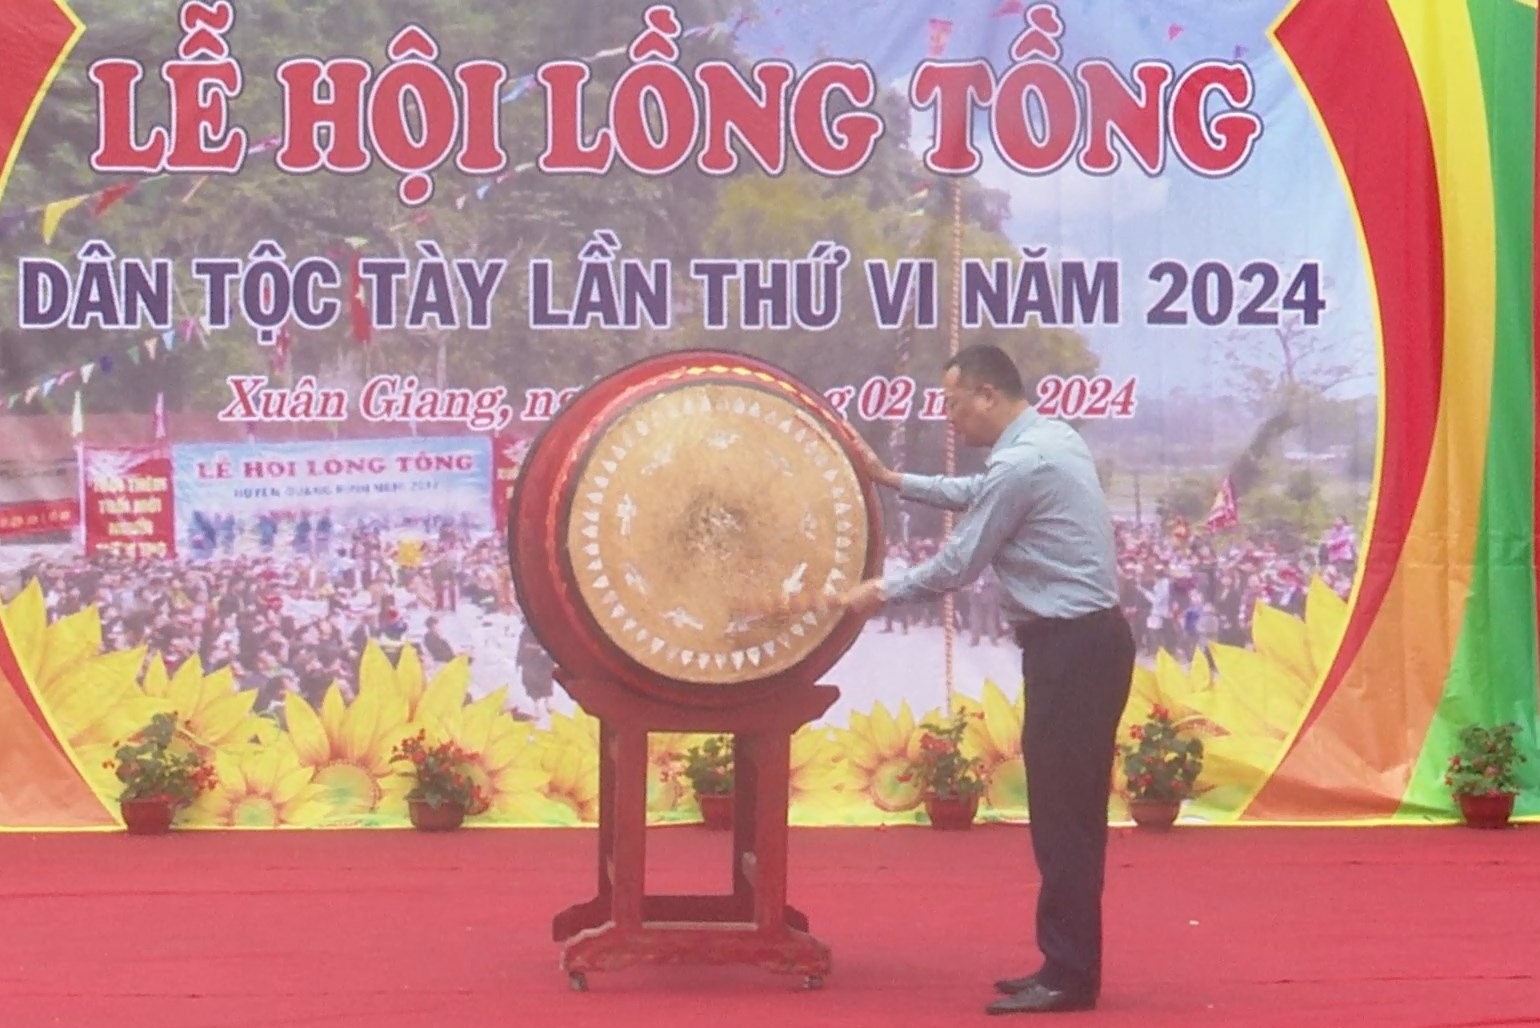 Ghi nhận Lễ hội Lồng tồng xã Xuân Giang năm 2024